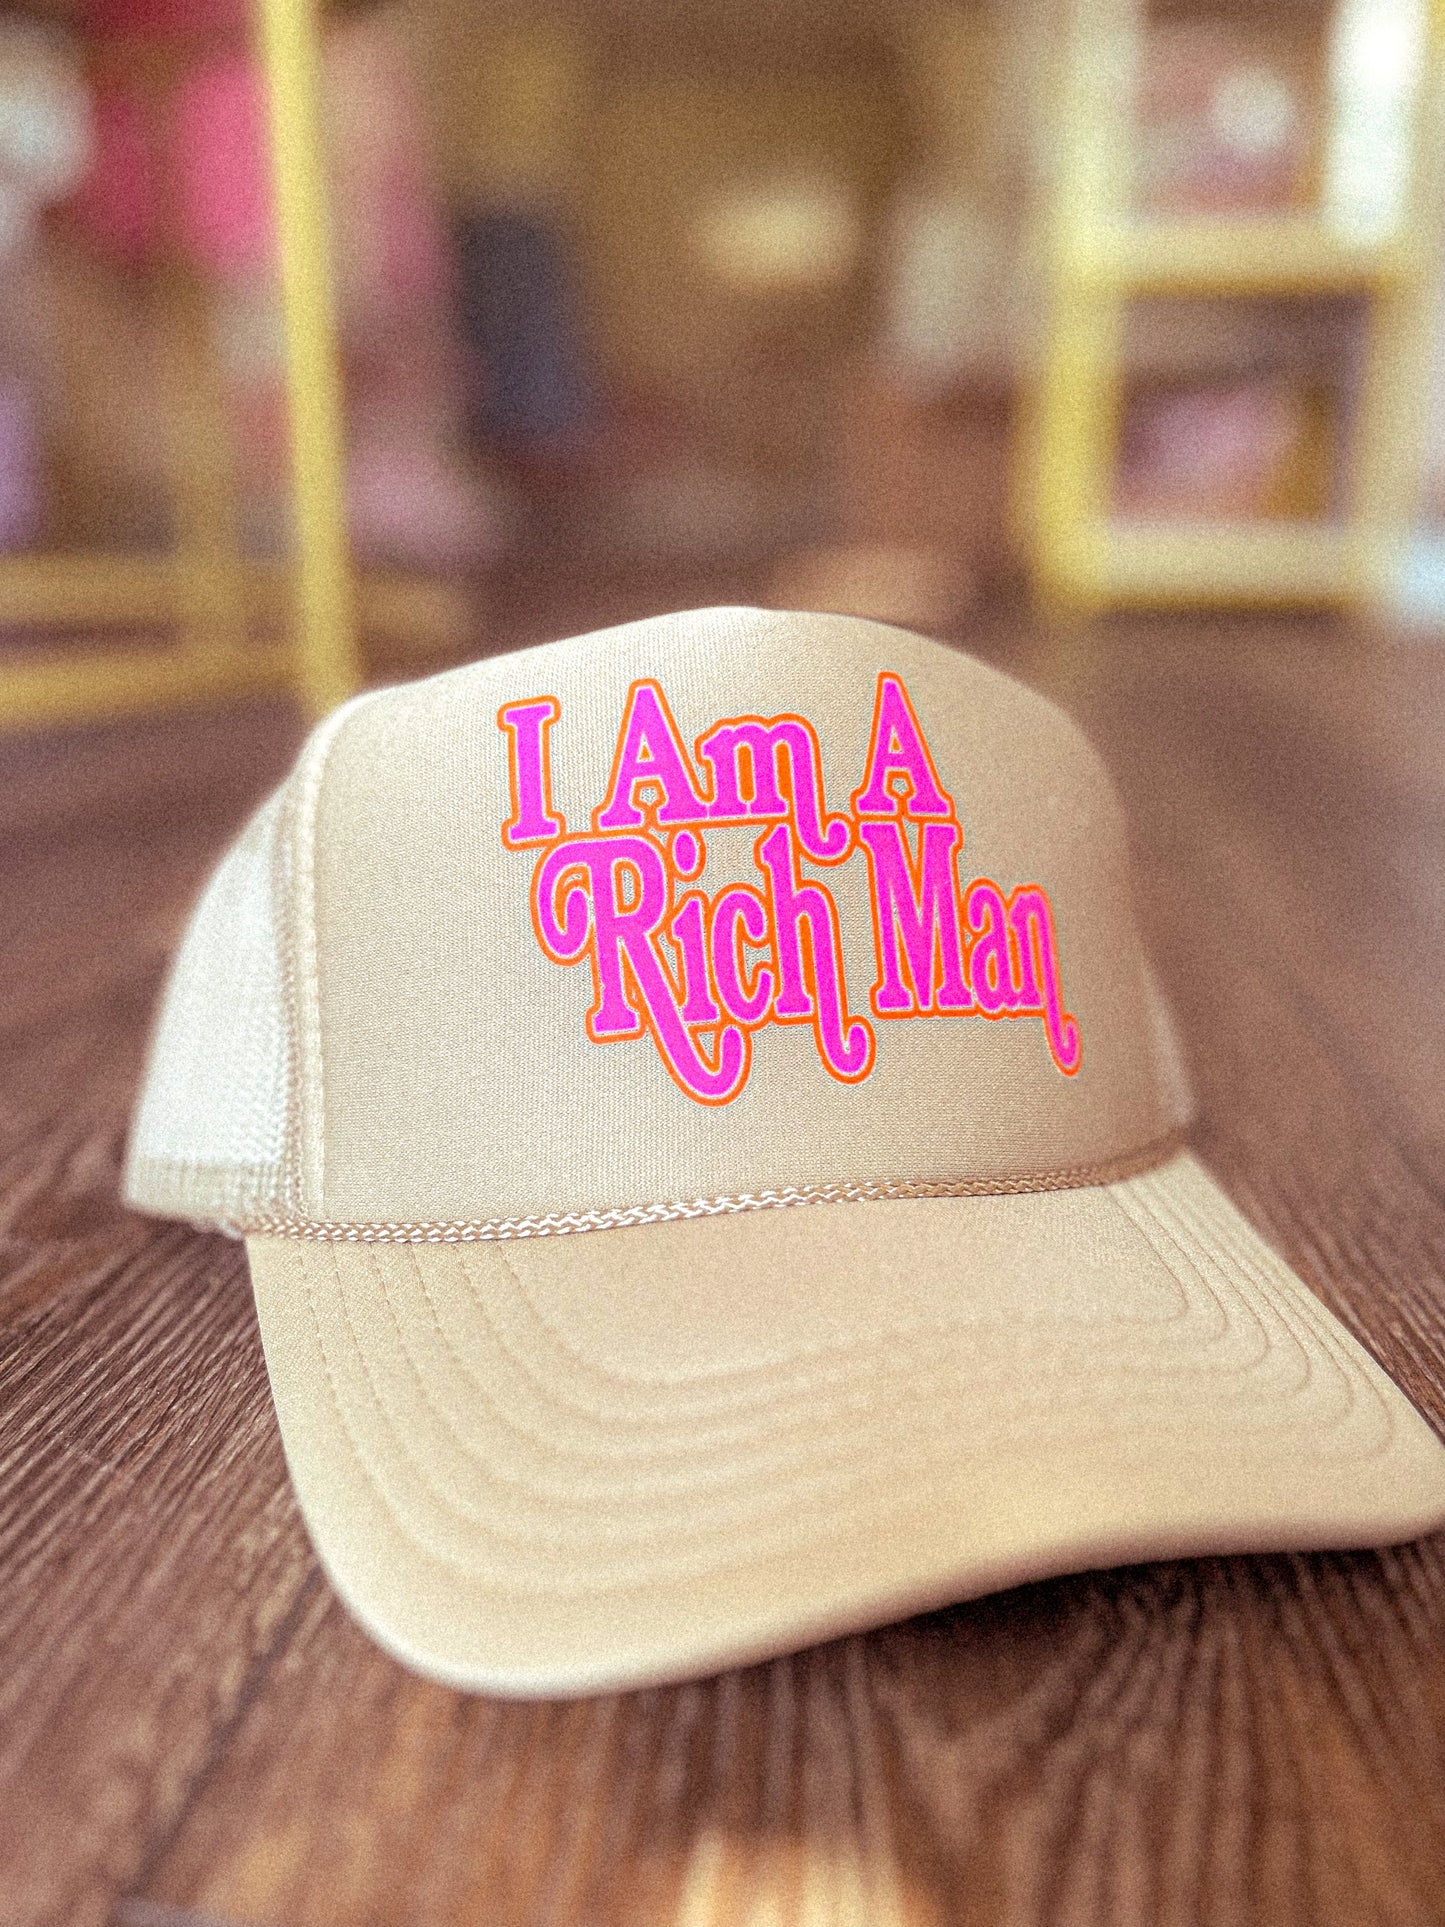 Mom, I Am A Rich Man Trucker Hat